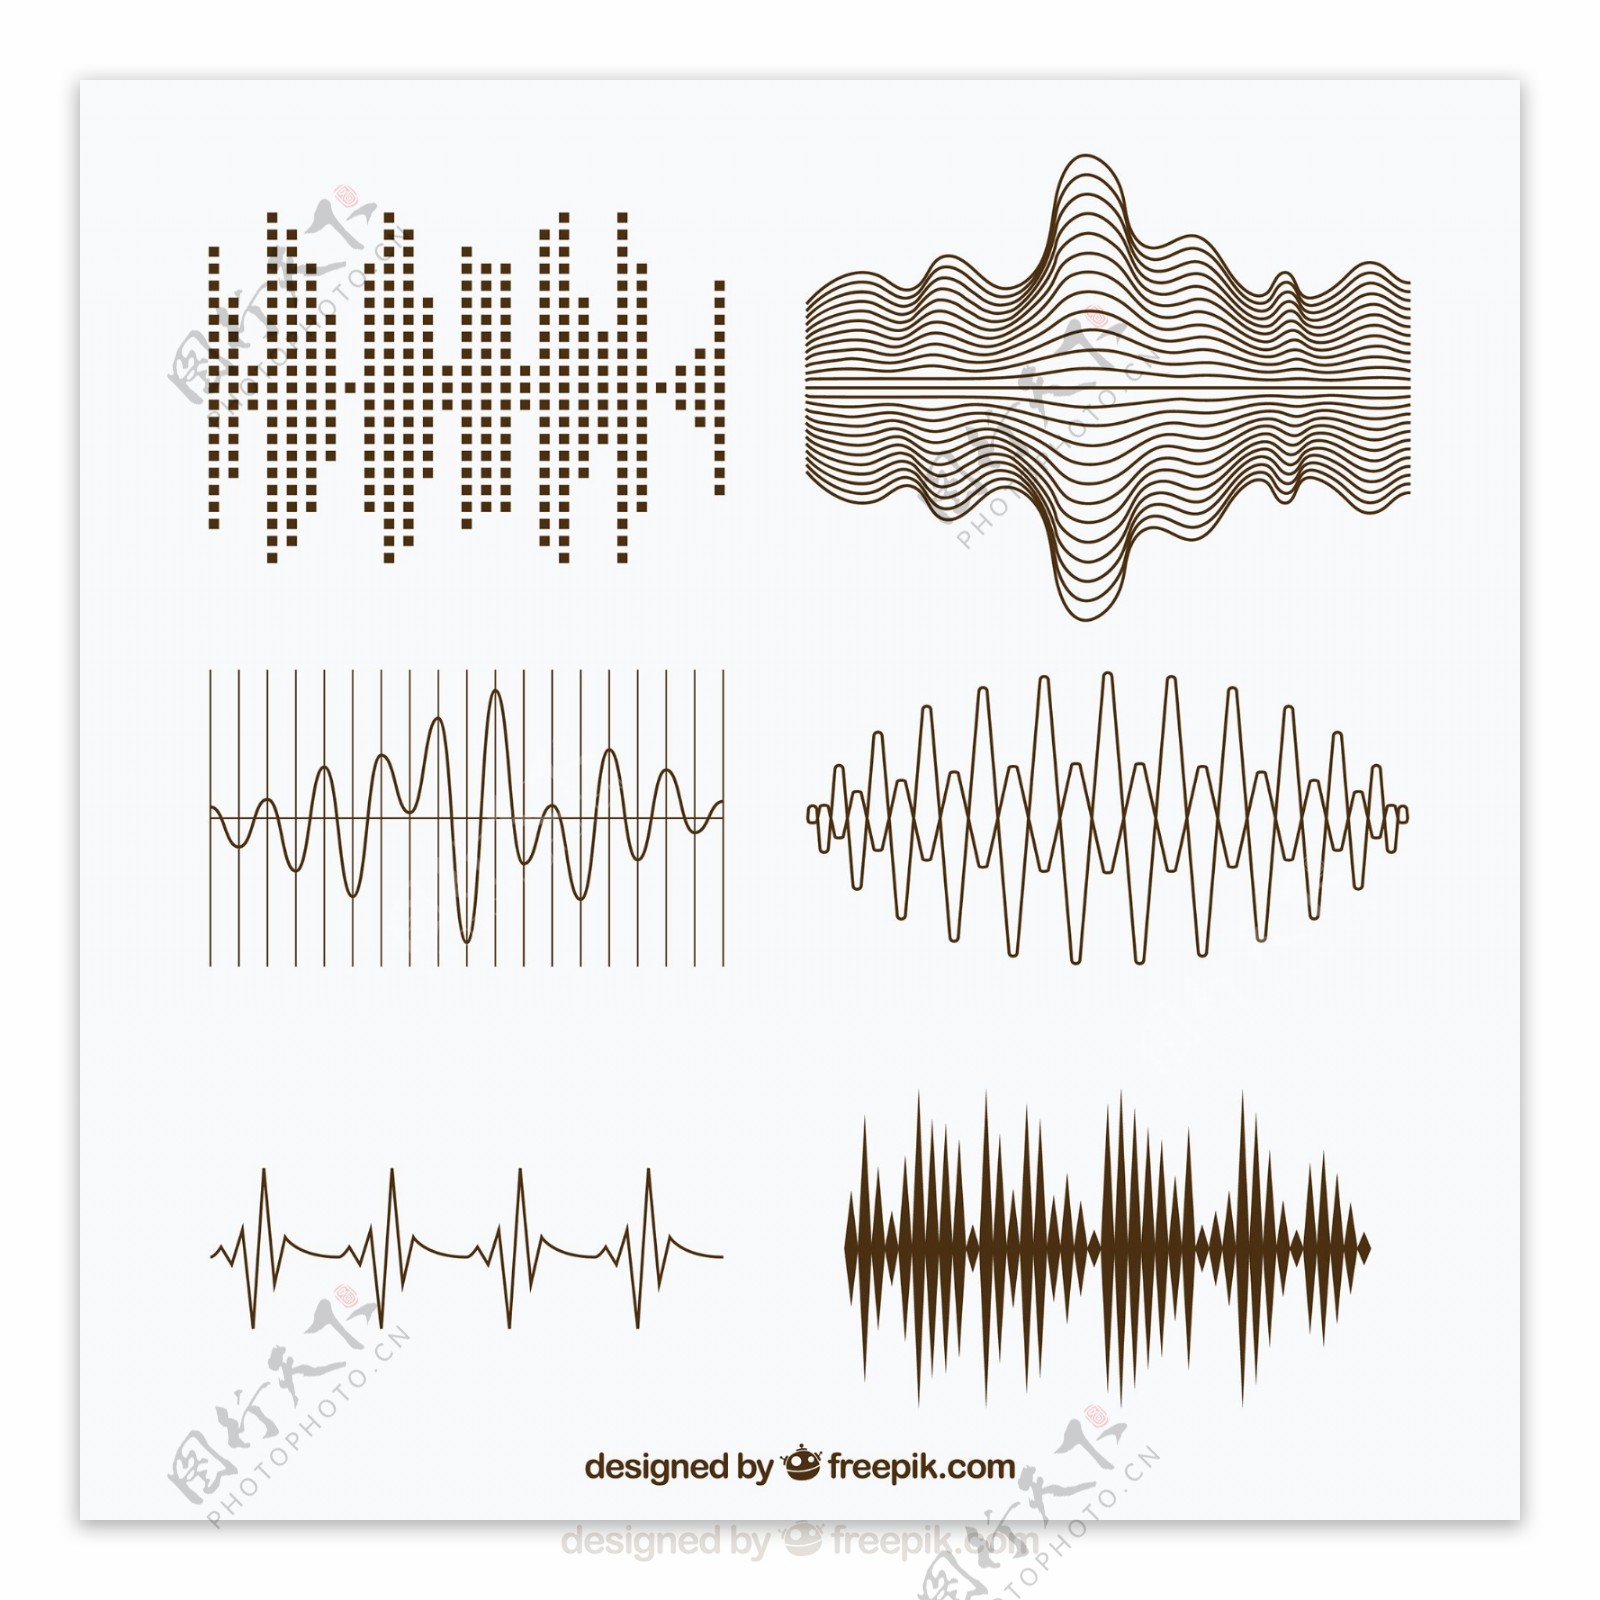 各种各样的声波不同图形设计矢量素材